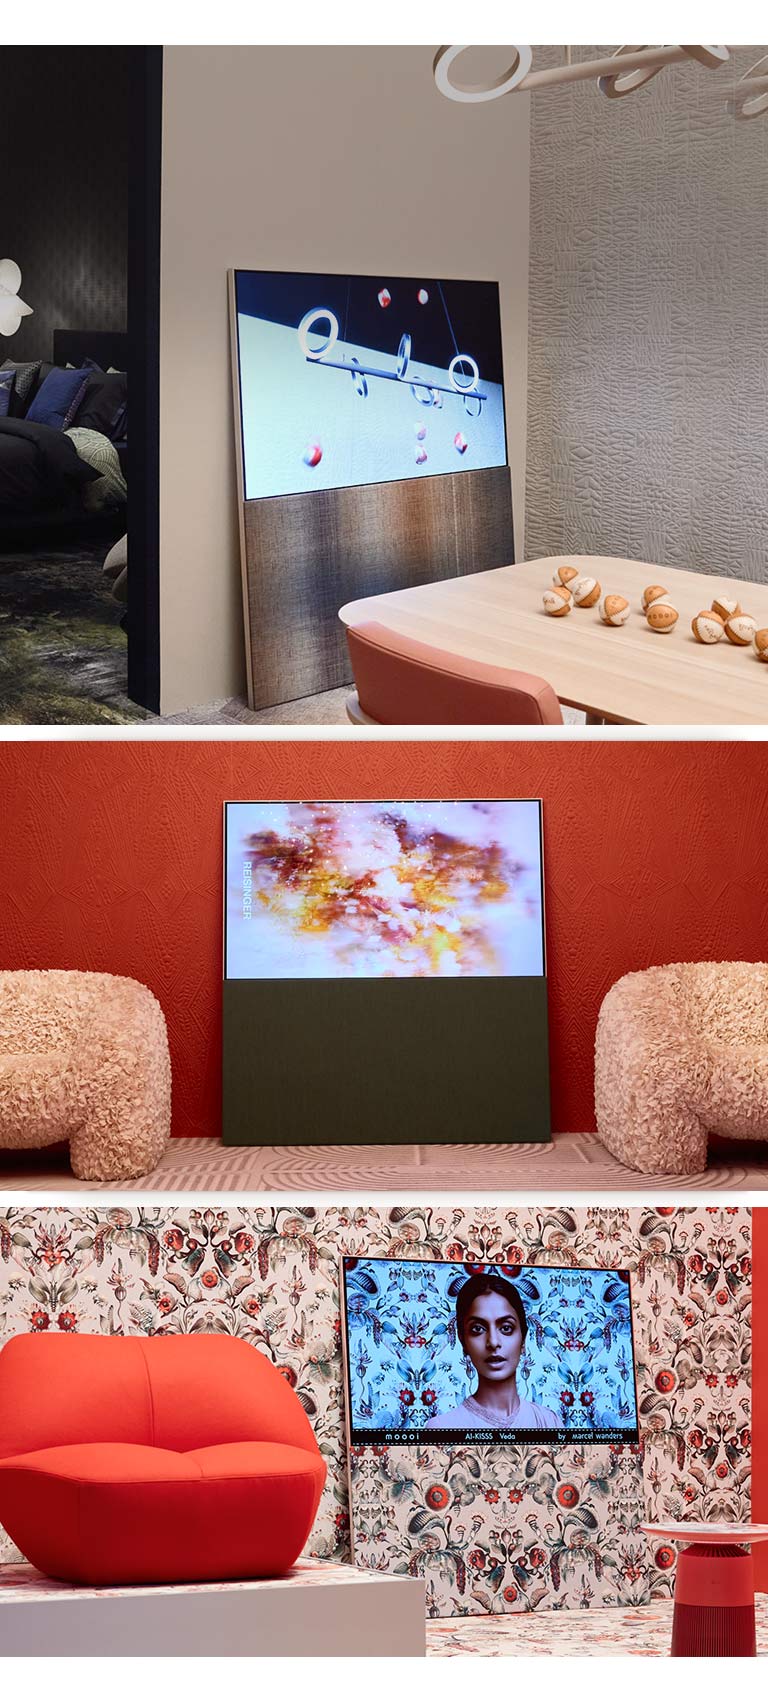 Op de bovenste afbeelding is een Easel te zien die tegen een muur leunt in een kamer met neutrale kleuren en een abstract kunstwerk met honkballen op het scherm. Tegenover de tv staat een houten tafel waar ook honkballen op liggen. 	 Op de afbeelding rechtsonder is een Easel te zien die leunt tegen een muur met een helder bloemenpatroon in rode en groene kleuren. Op het scherm is een afbeelding zichtbaar van een vrouw tegen dezelfde achtergrond als de muur eromheen. De standaard met stoffen textuur heeft hetzelfde patroon. Er staat een rode eenpersoonsbank naast de tv. Op de afbeelding linksonder is een Easel te zien die leunt tegen een getextureerde muur met terracottakleuren. Een abstract rode, oranje en paarse afbeelding vult het scherm. Er staan beige getextureerde eenpersoonsbanken aan beide zijden van de tv.